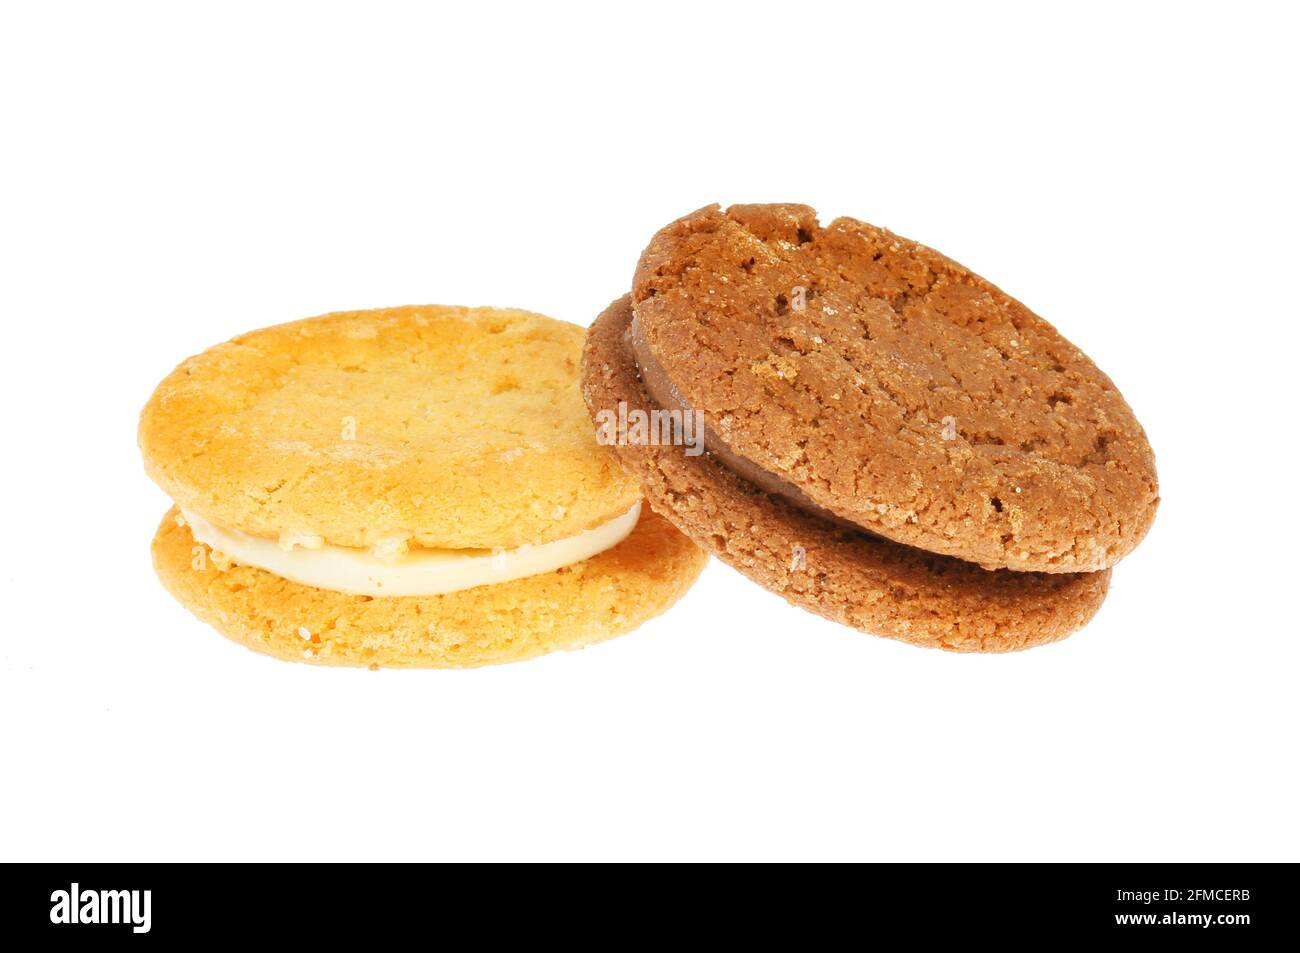 Biscuits sandwich à la vanille et à la crème au chocolat isolés contre du blanc Banque D'Images